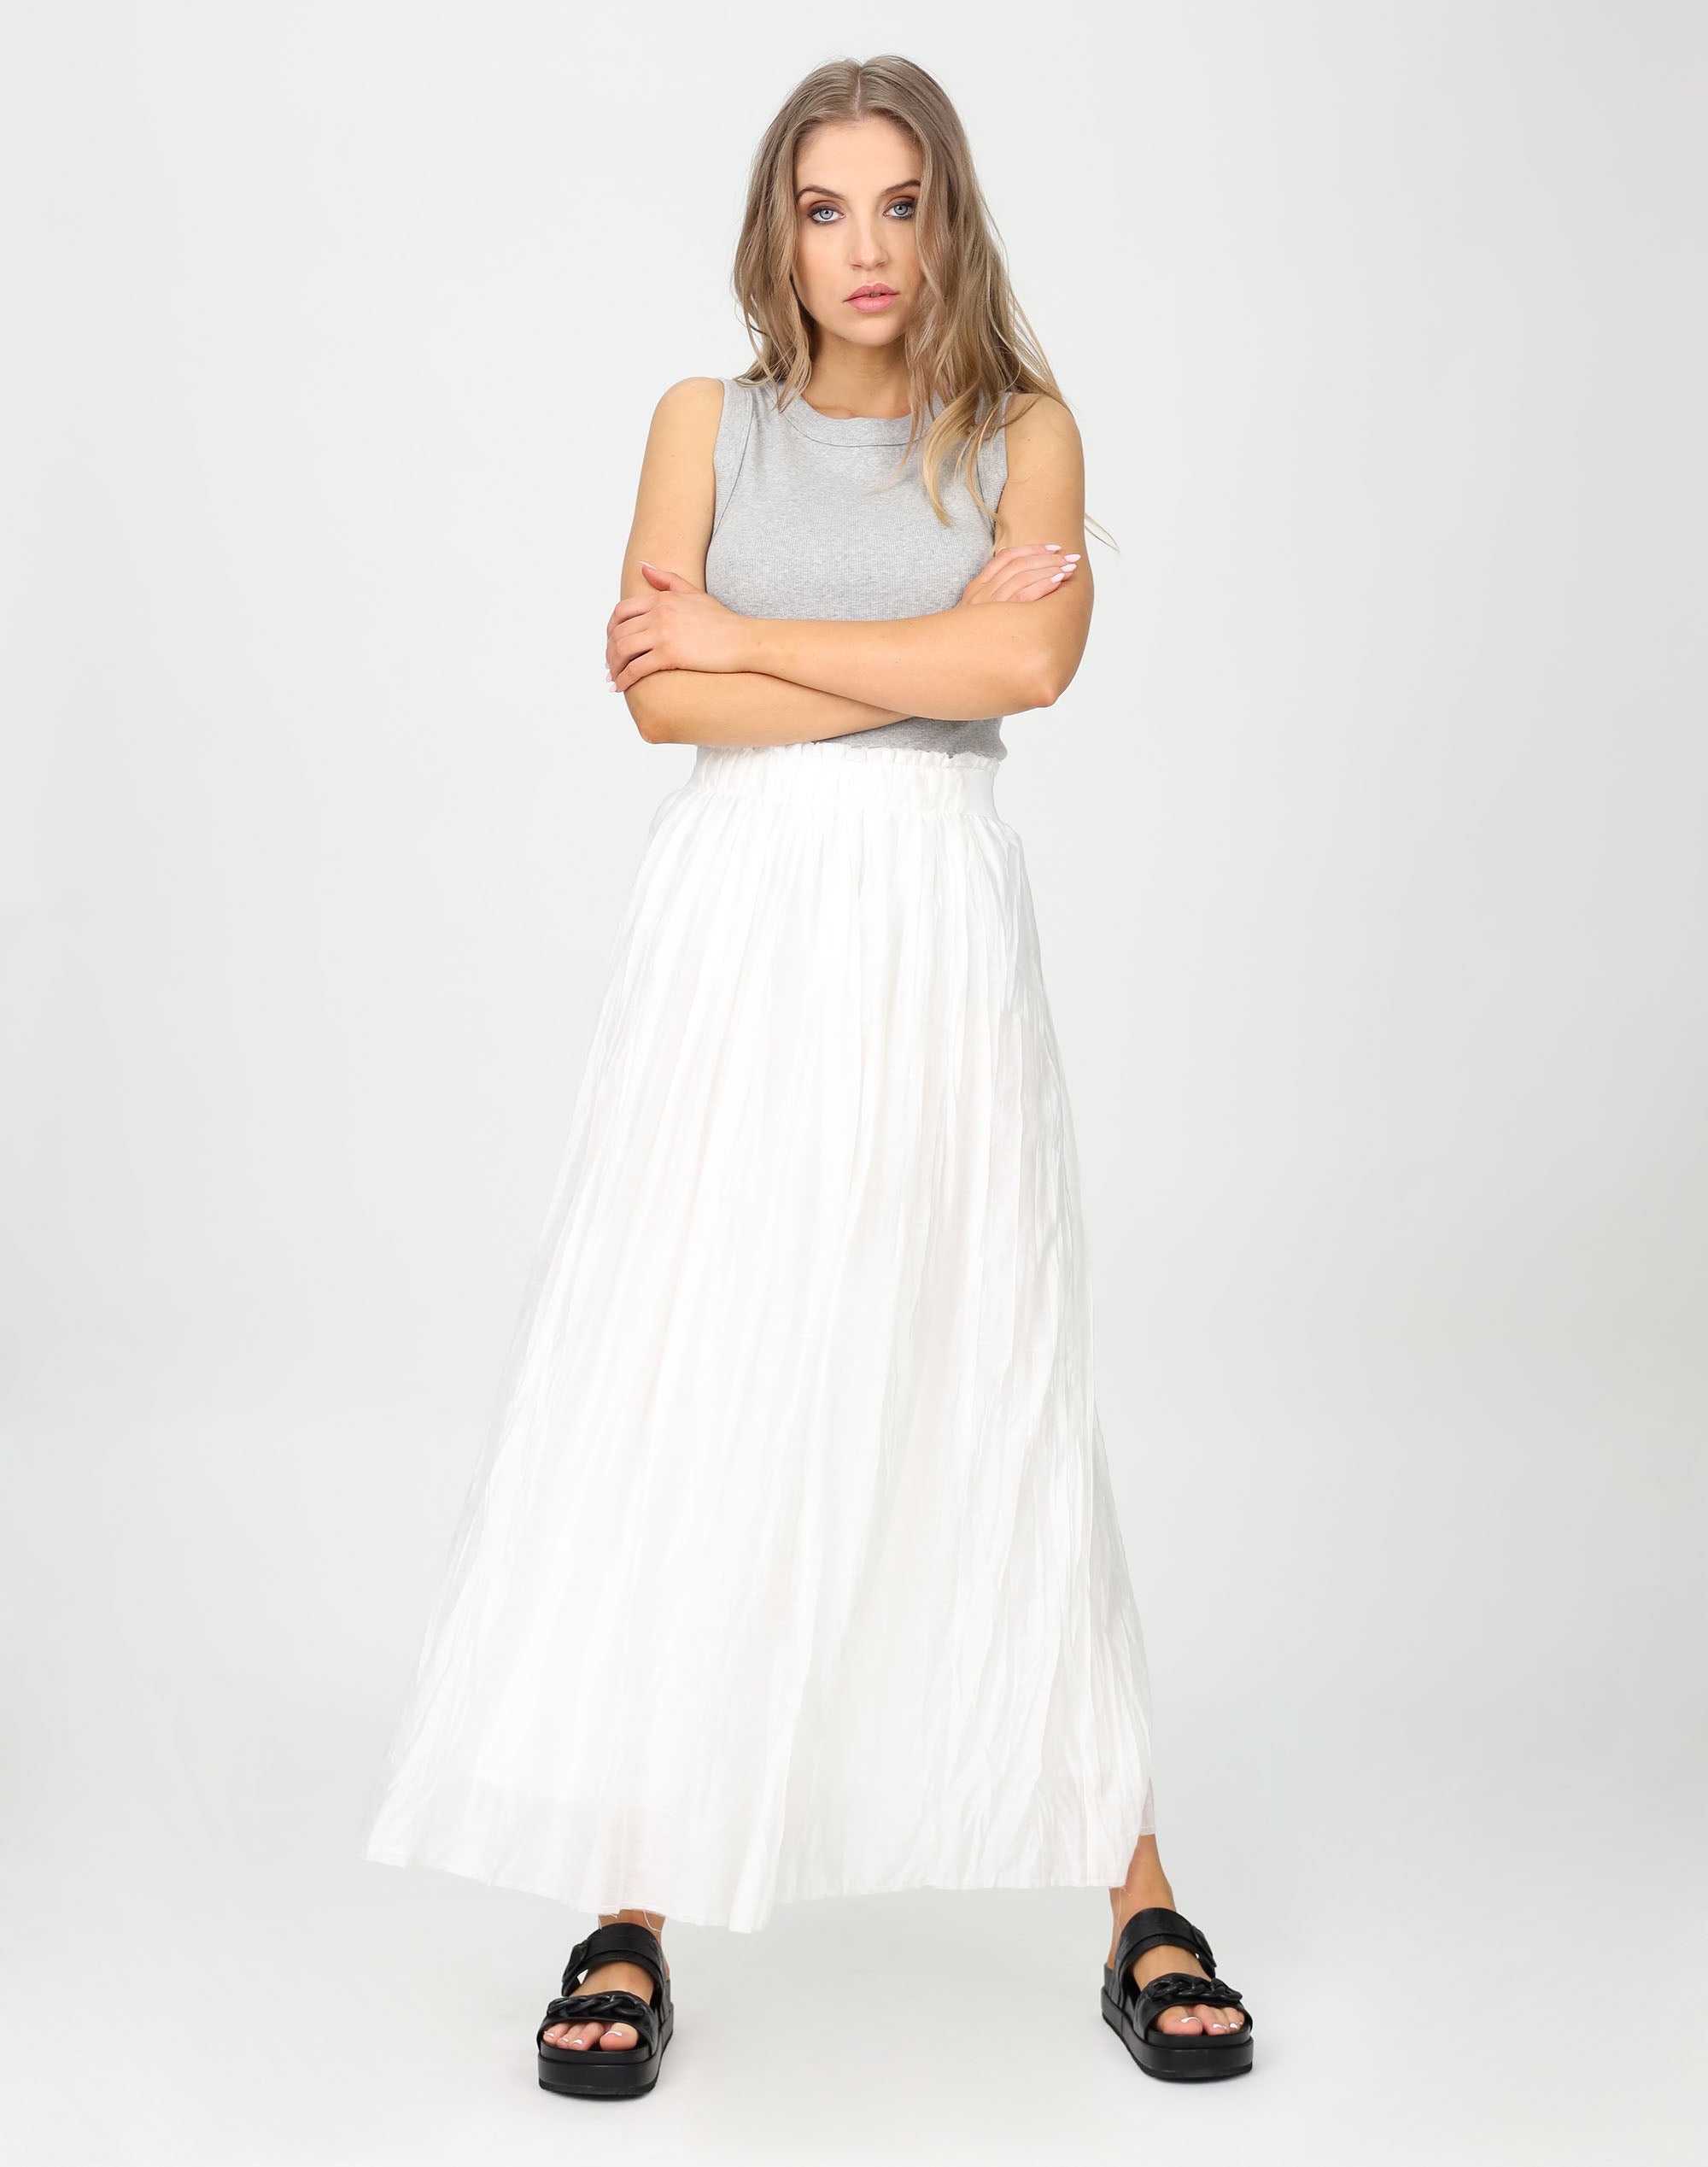 Crinkle Maxi Skirt - White - Skirt Maxi - Women's Clothing - Storm